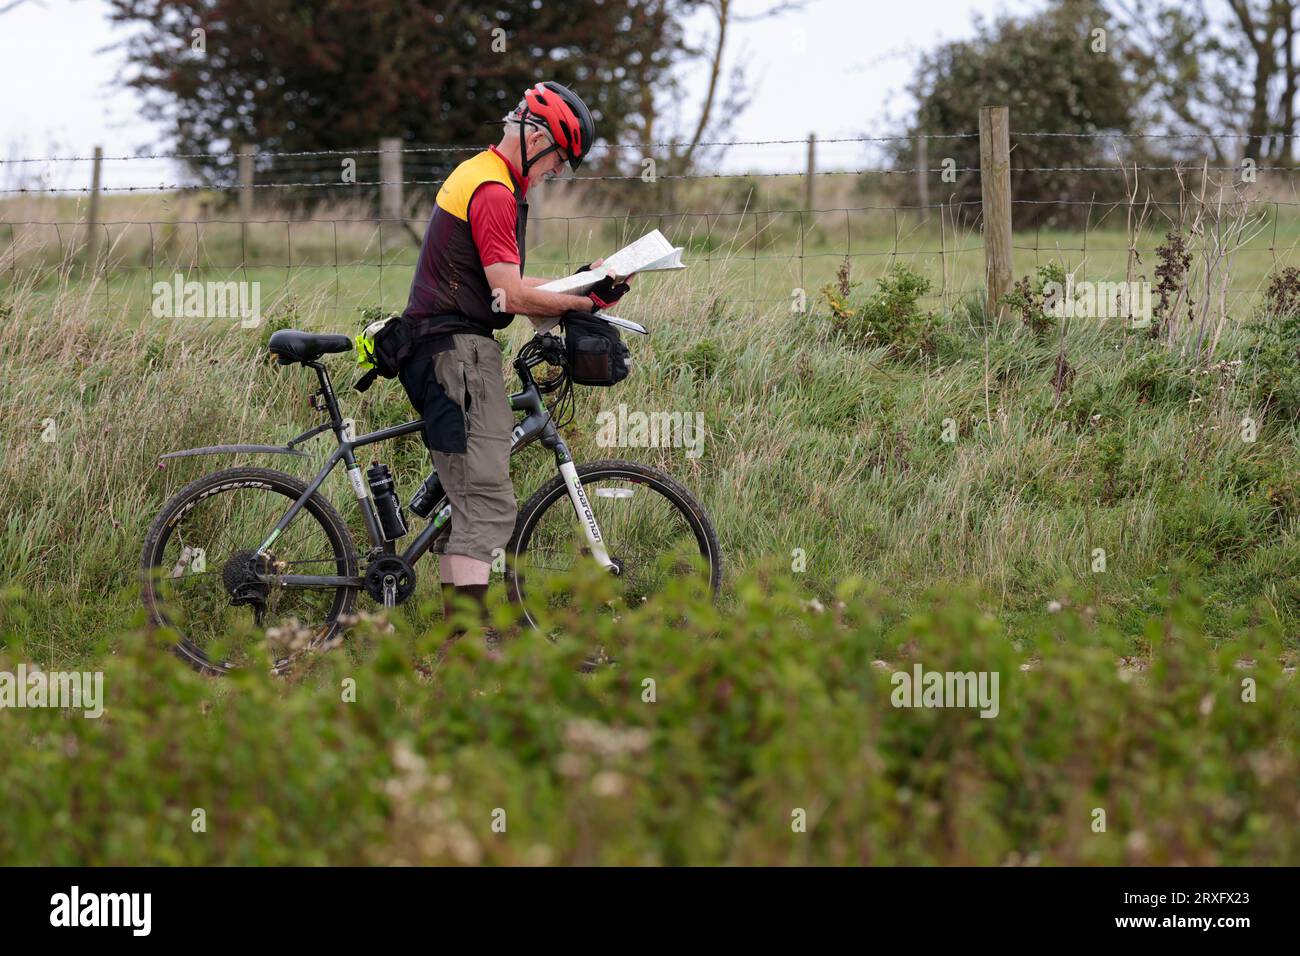 Radfahrer, die anhalten, um Karte zu lesen, schieben Fahrrad auf South Downs UK Gesundheit und Fitness mit schwarzen und roten Helm rot schwarz und gelb Oberteile Stockfoto